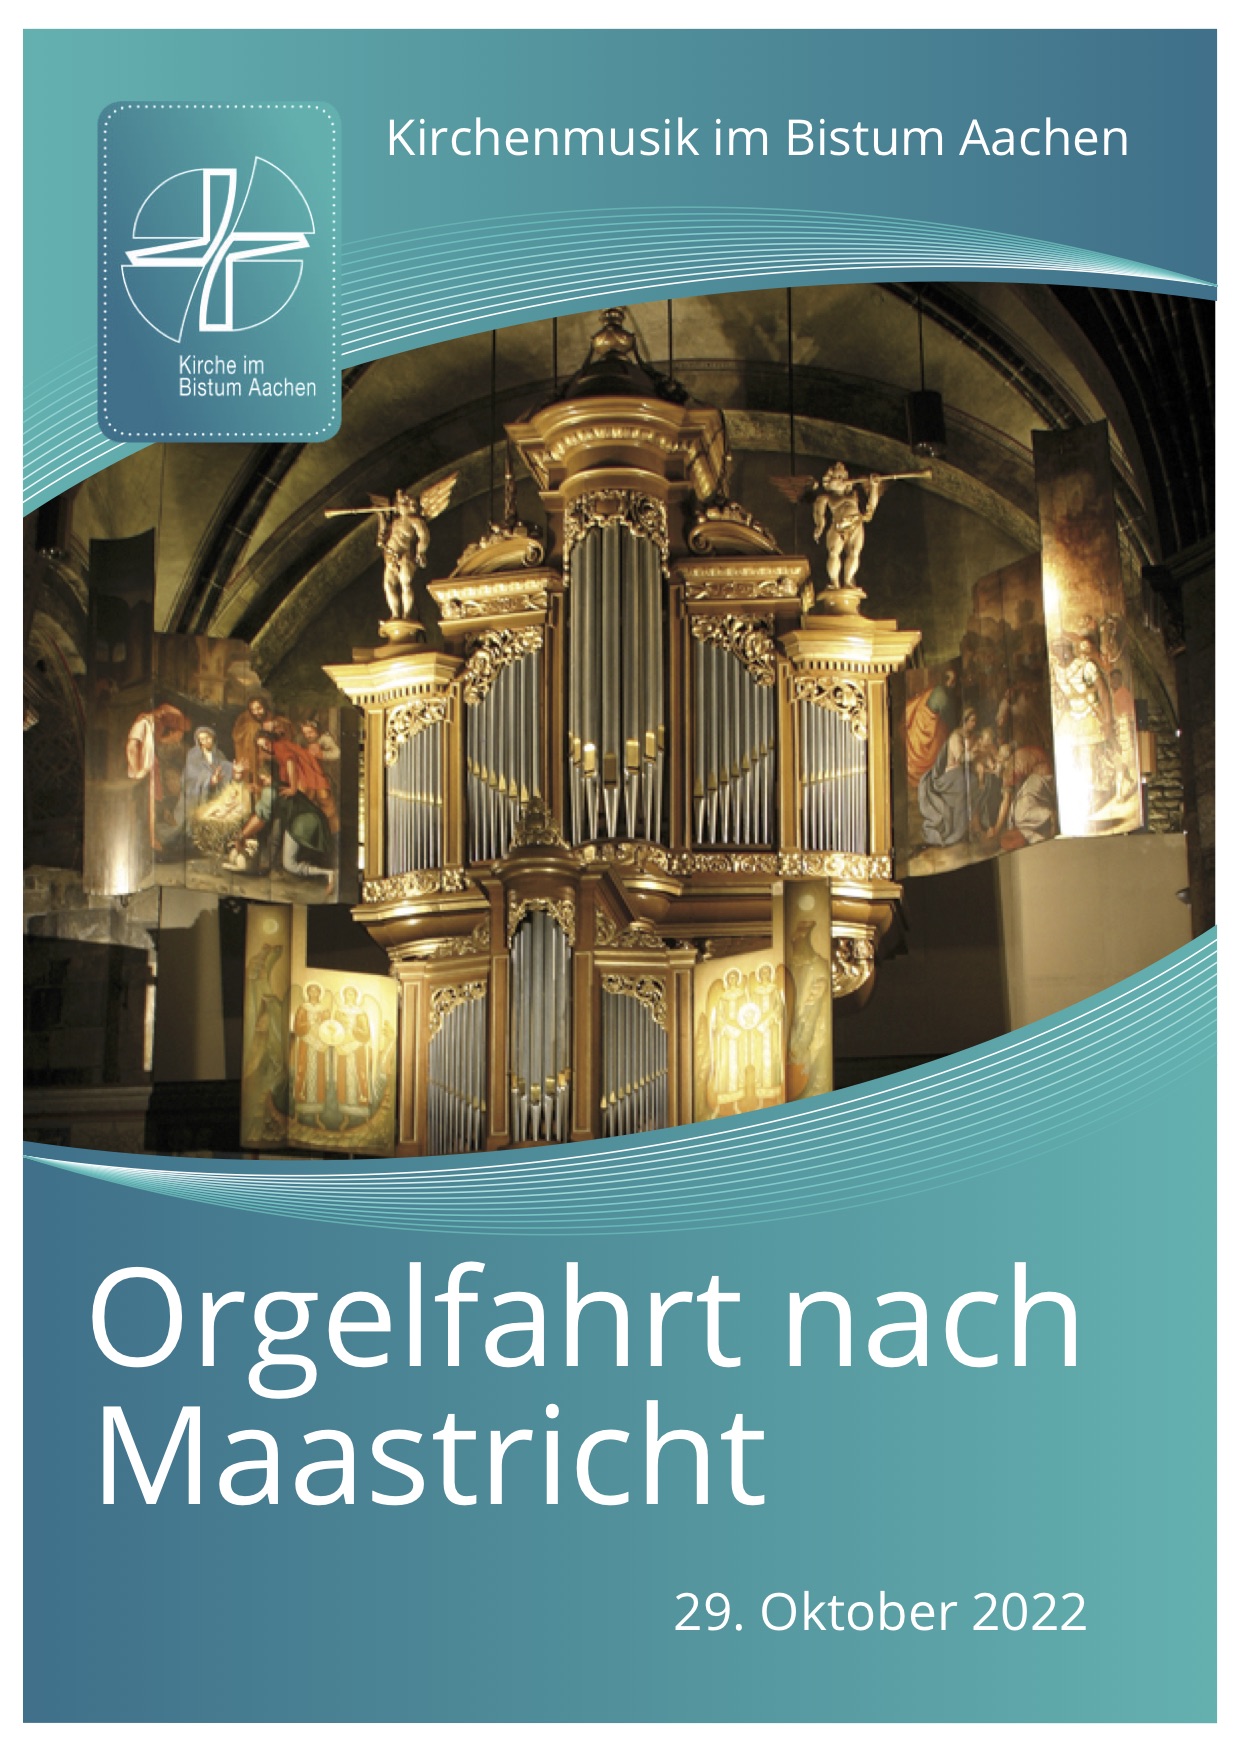 Flyer Orgelfahrt Maastricht 2022 10 29 - Titelseite (c) Bistum Aachen